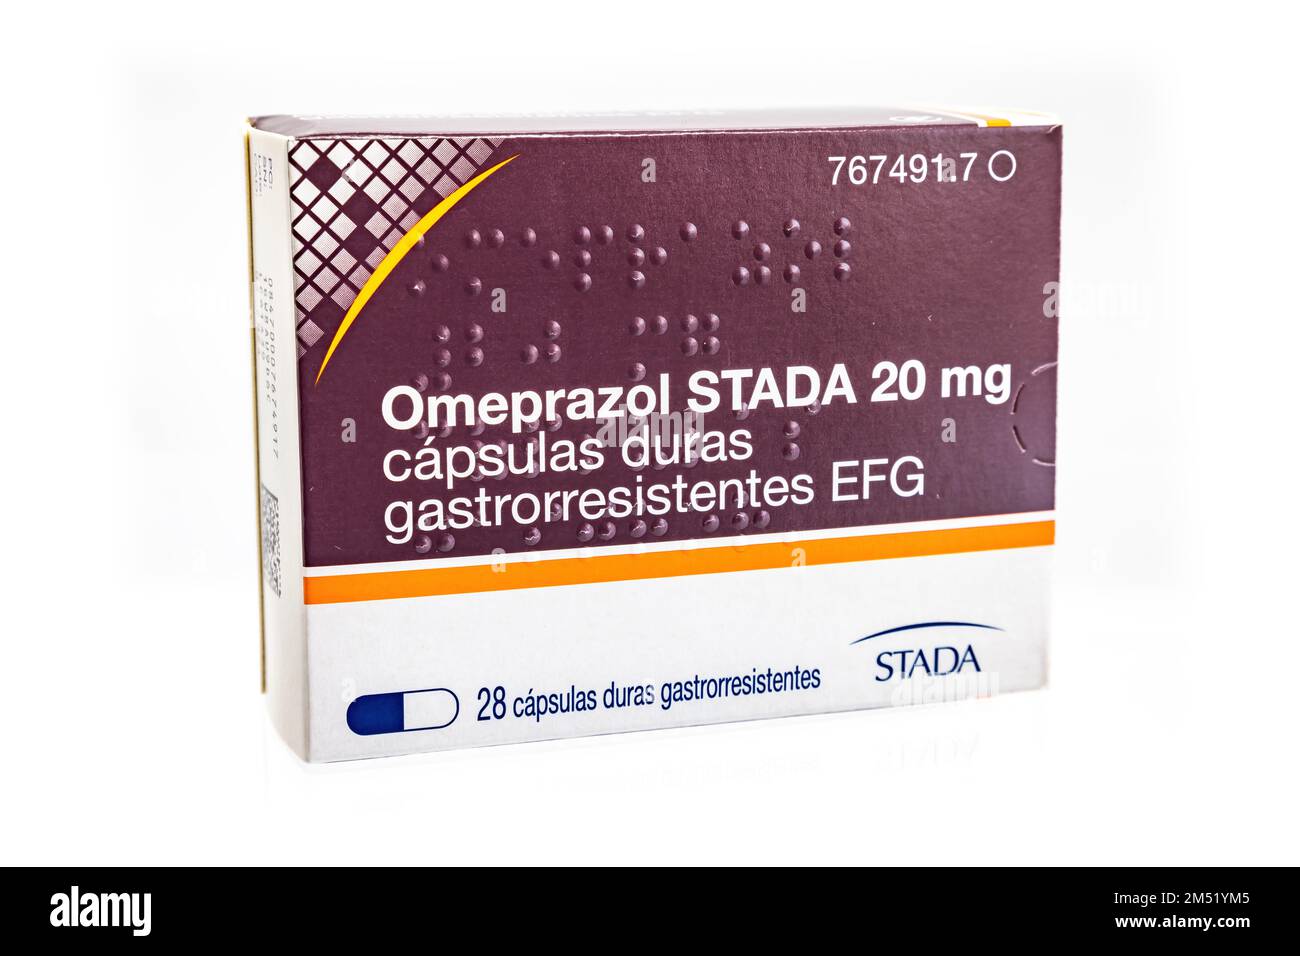 Huelva, Spanien - 24. Dezember 2022: Spanische Schachtel Omeprazol aus dem Labor Stada. Omeprazol wird zur Behandlung bestimmter Magen- und Speiseröhrenprobleme (wie diese) angewendet Stockfoto